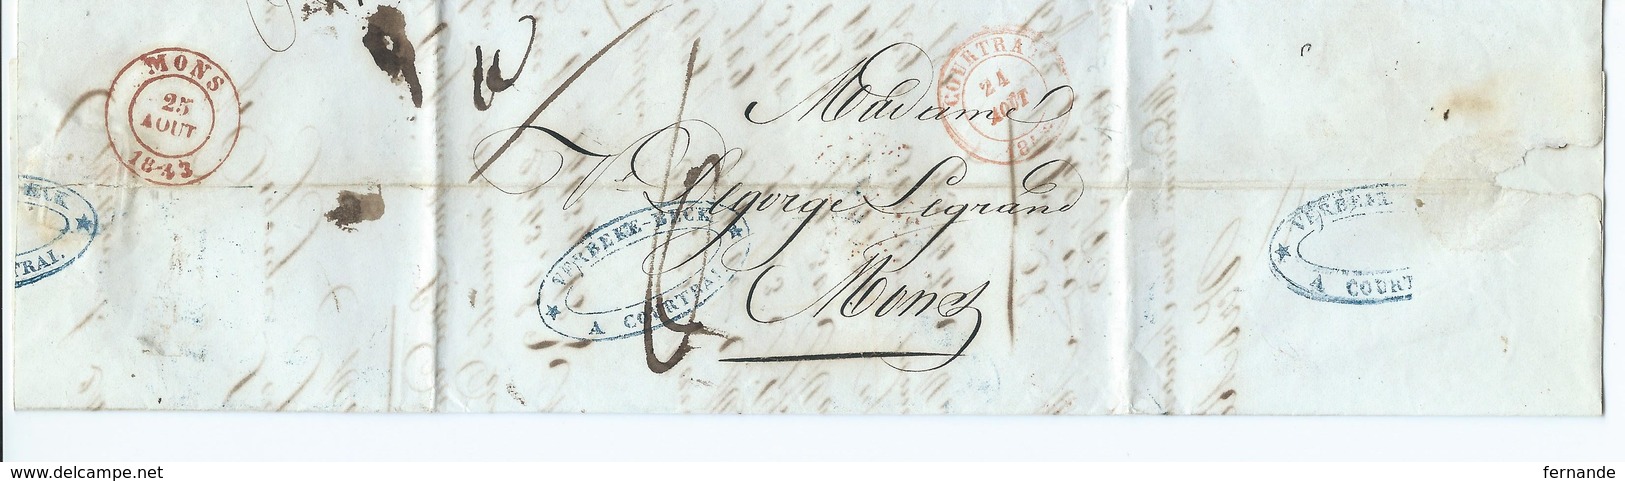 LAC De Courtray ( Courtrai ) 24 Aout 1843 Vers  MONS - 1830-1849 (Belgique Indépendante)